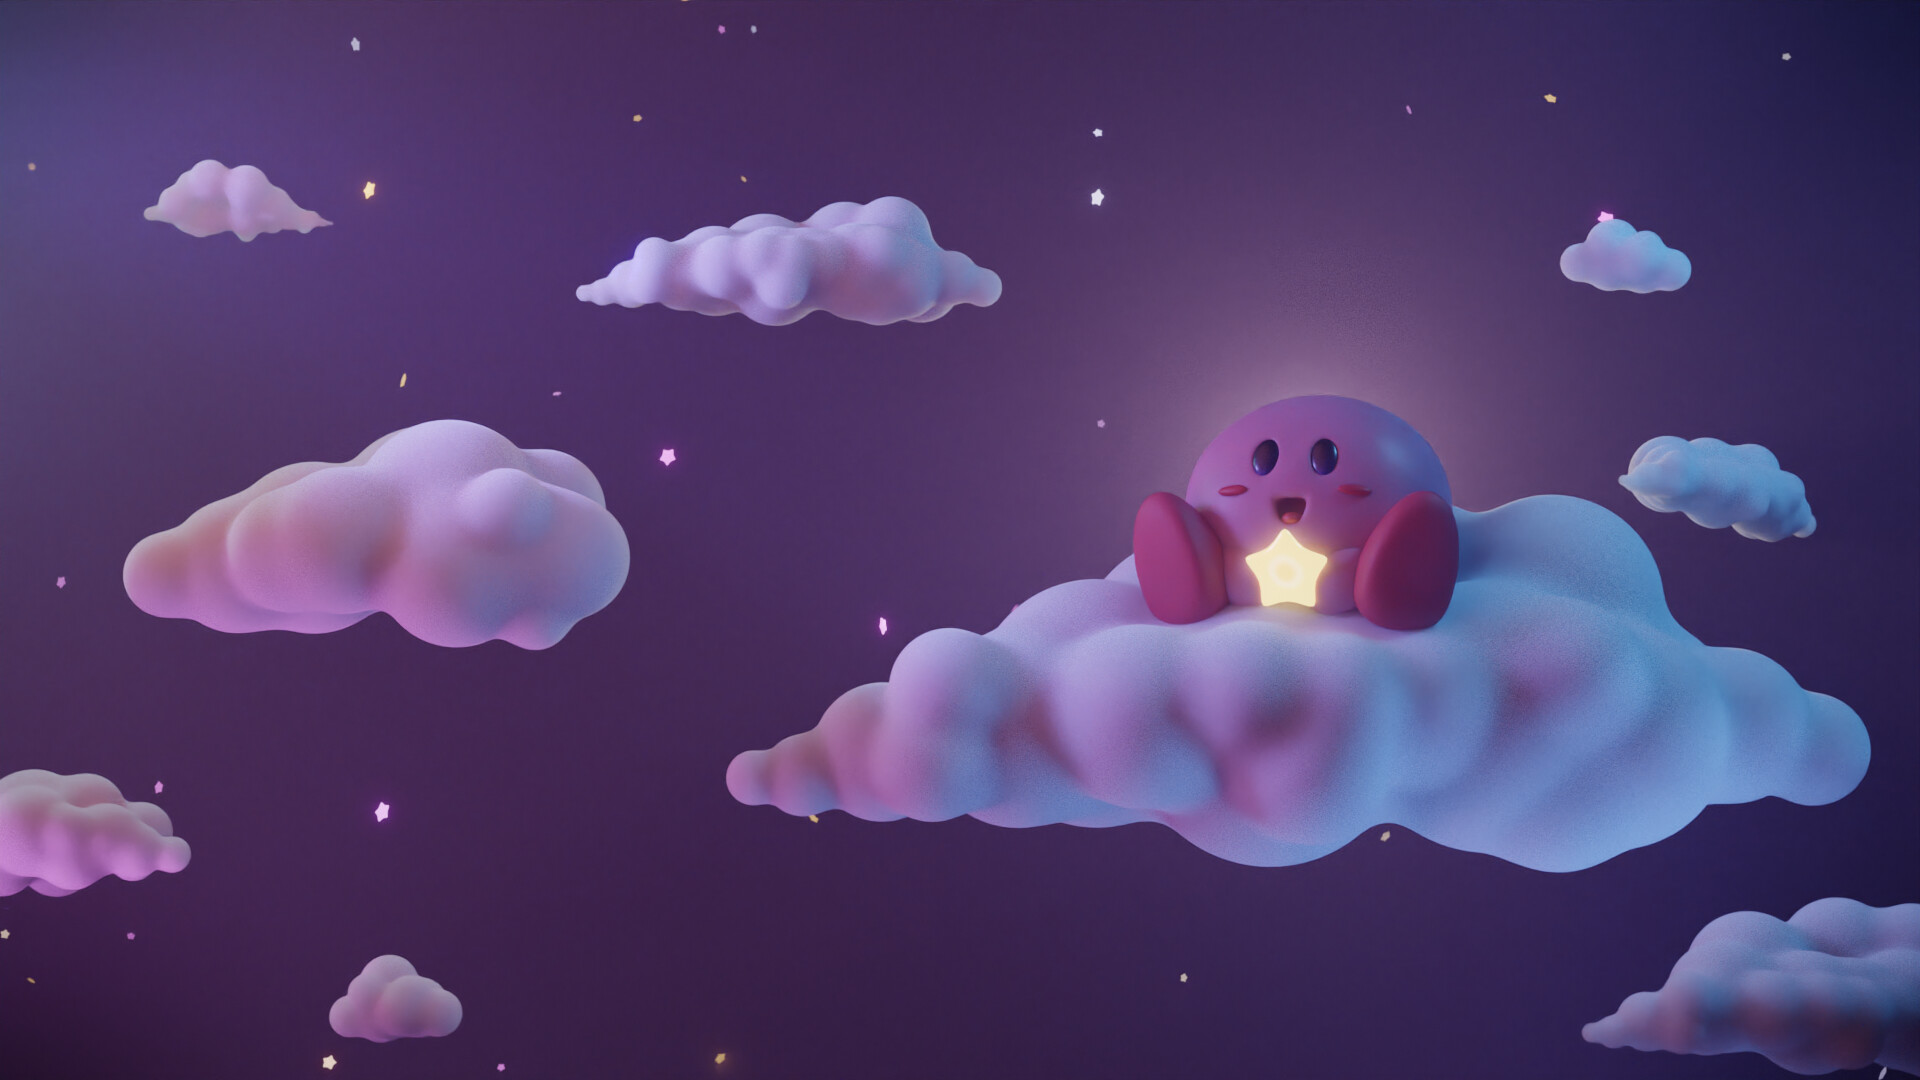 Dưới cách vẽ độc đáo của họa sĩ, tác phẩm nghệ thuật Kirby sẽ khiến bạn say đắm trong sắc màu đầy tươi sáng và ấn tượng. Xem ngay để thưởng thức dàn nhân vật dễ thương nay đến từ thế giới Kirby.